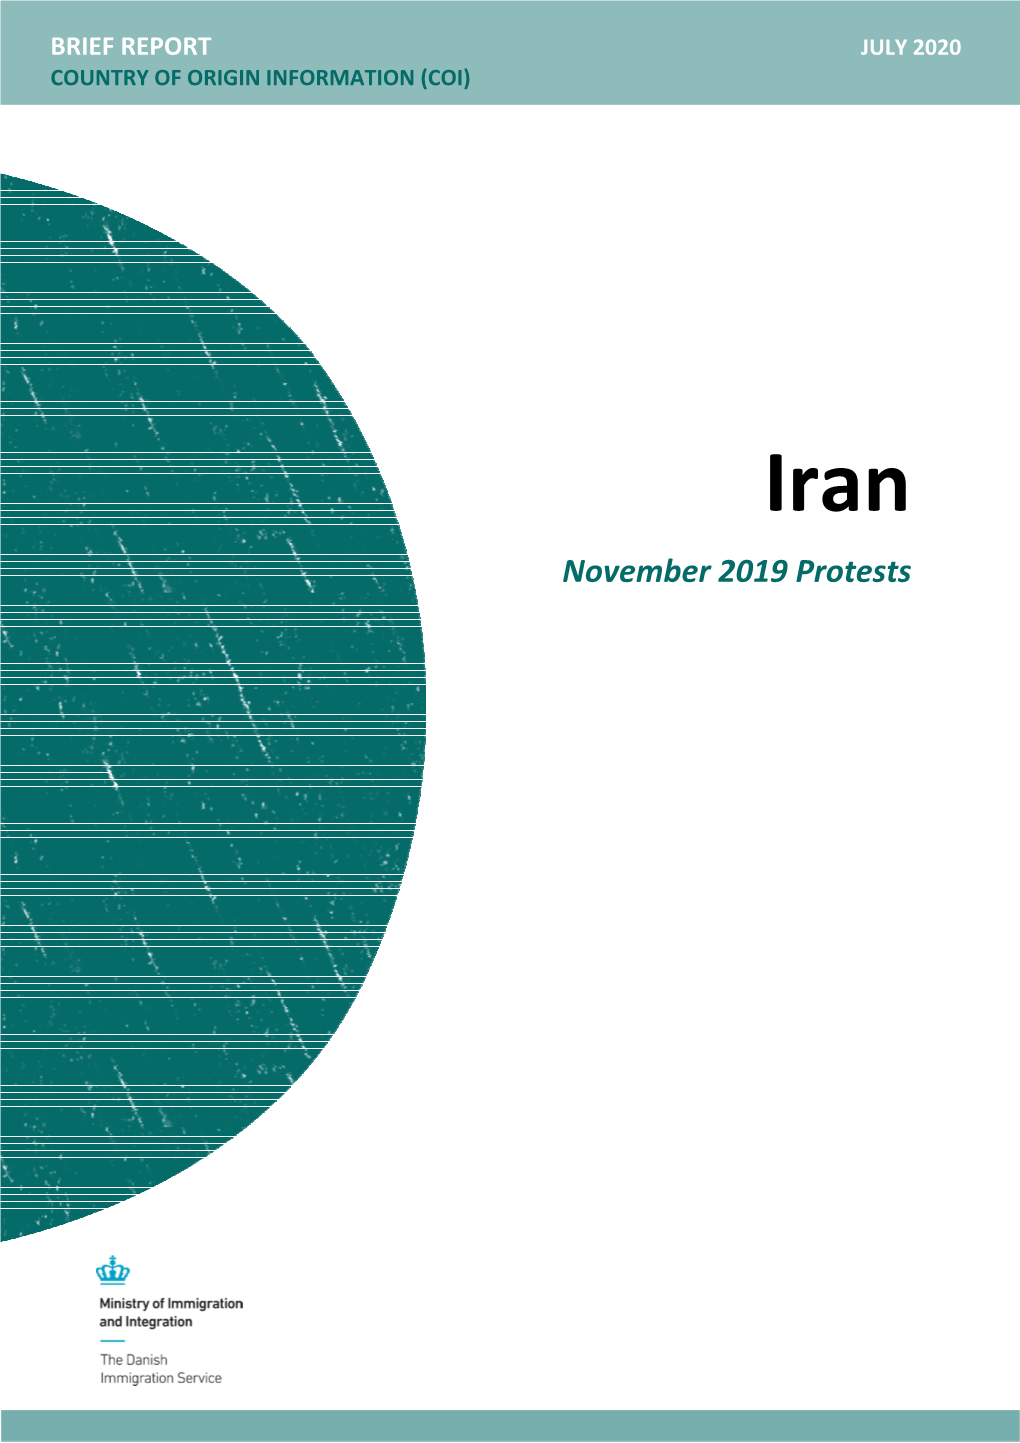 Iran: November 2019 Protests